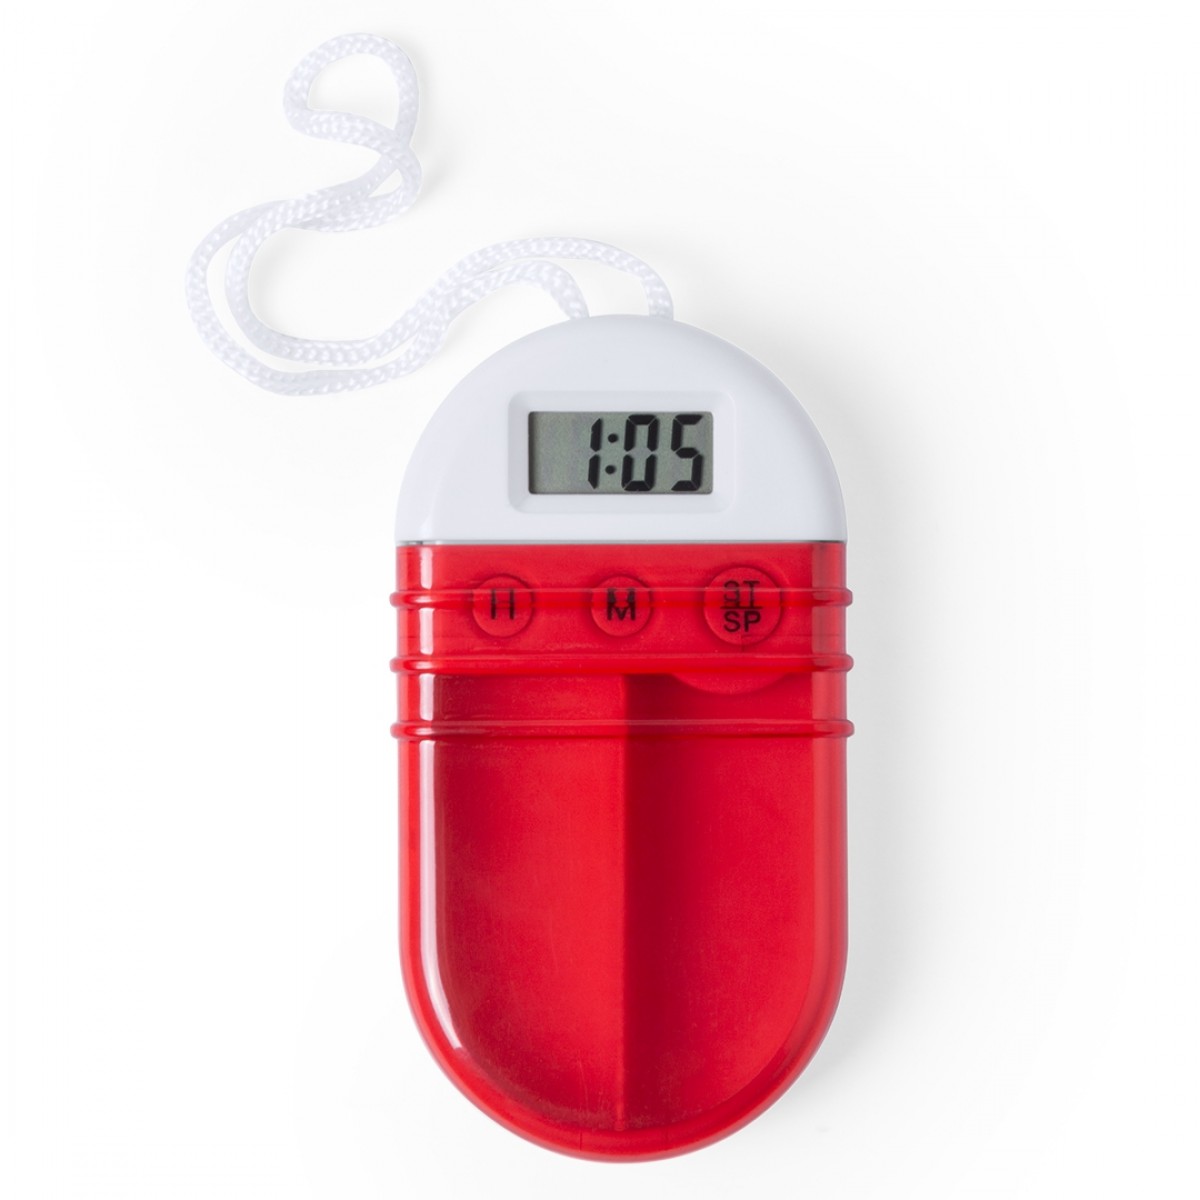 Portapillole con timer - Porta pillole - Cura personale - Wellness & Sport